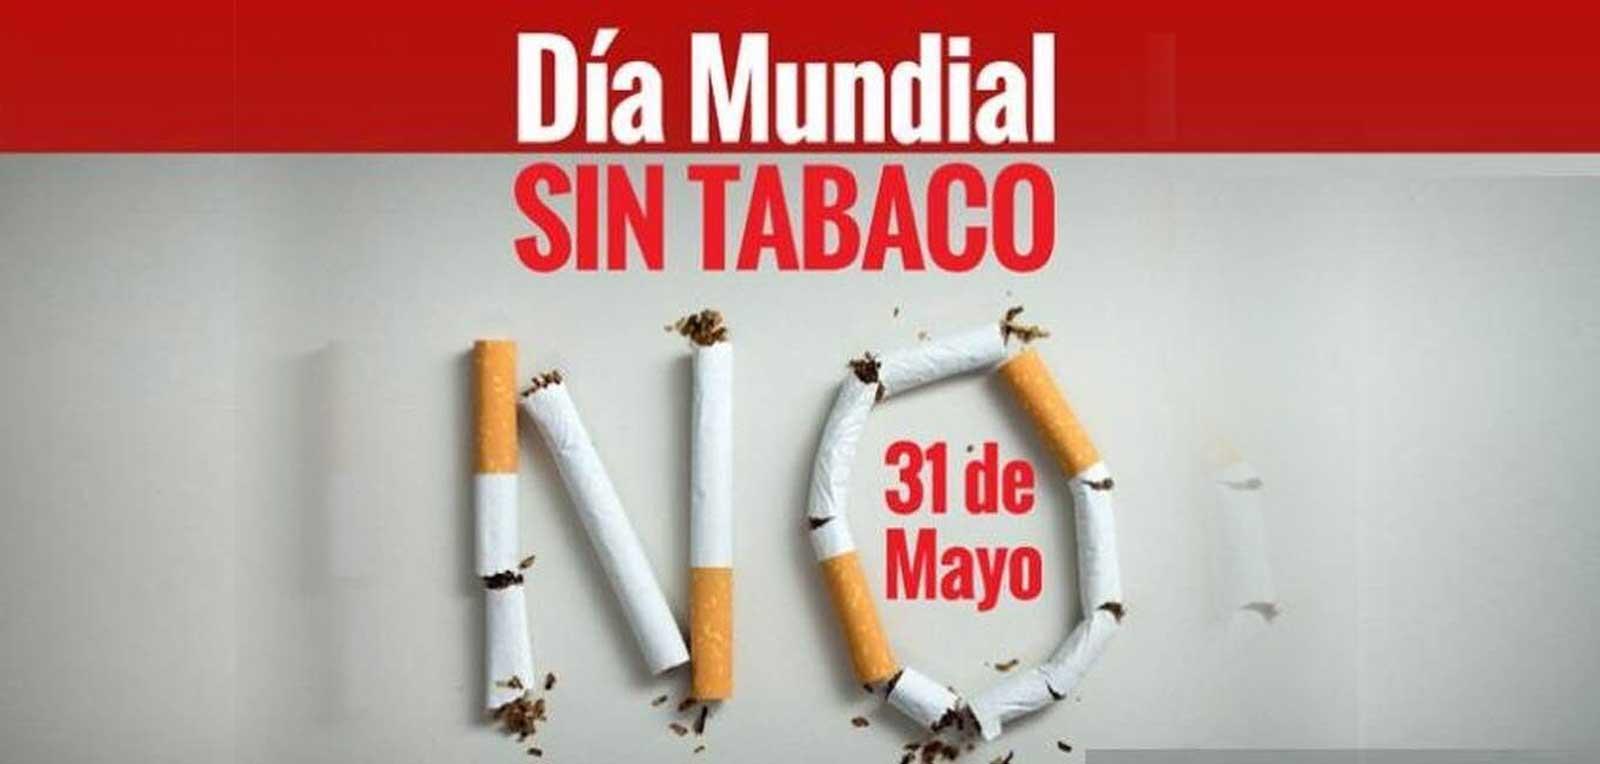 Día Mundial sin tabaco: Cuando el activismo se impone